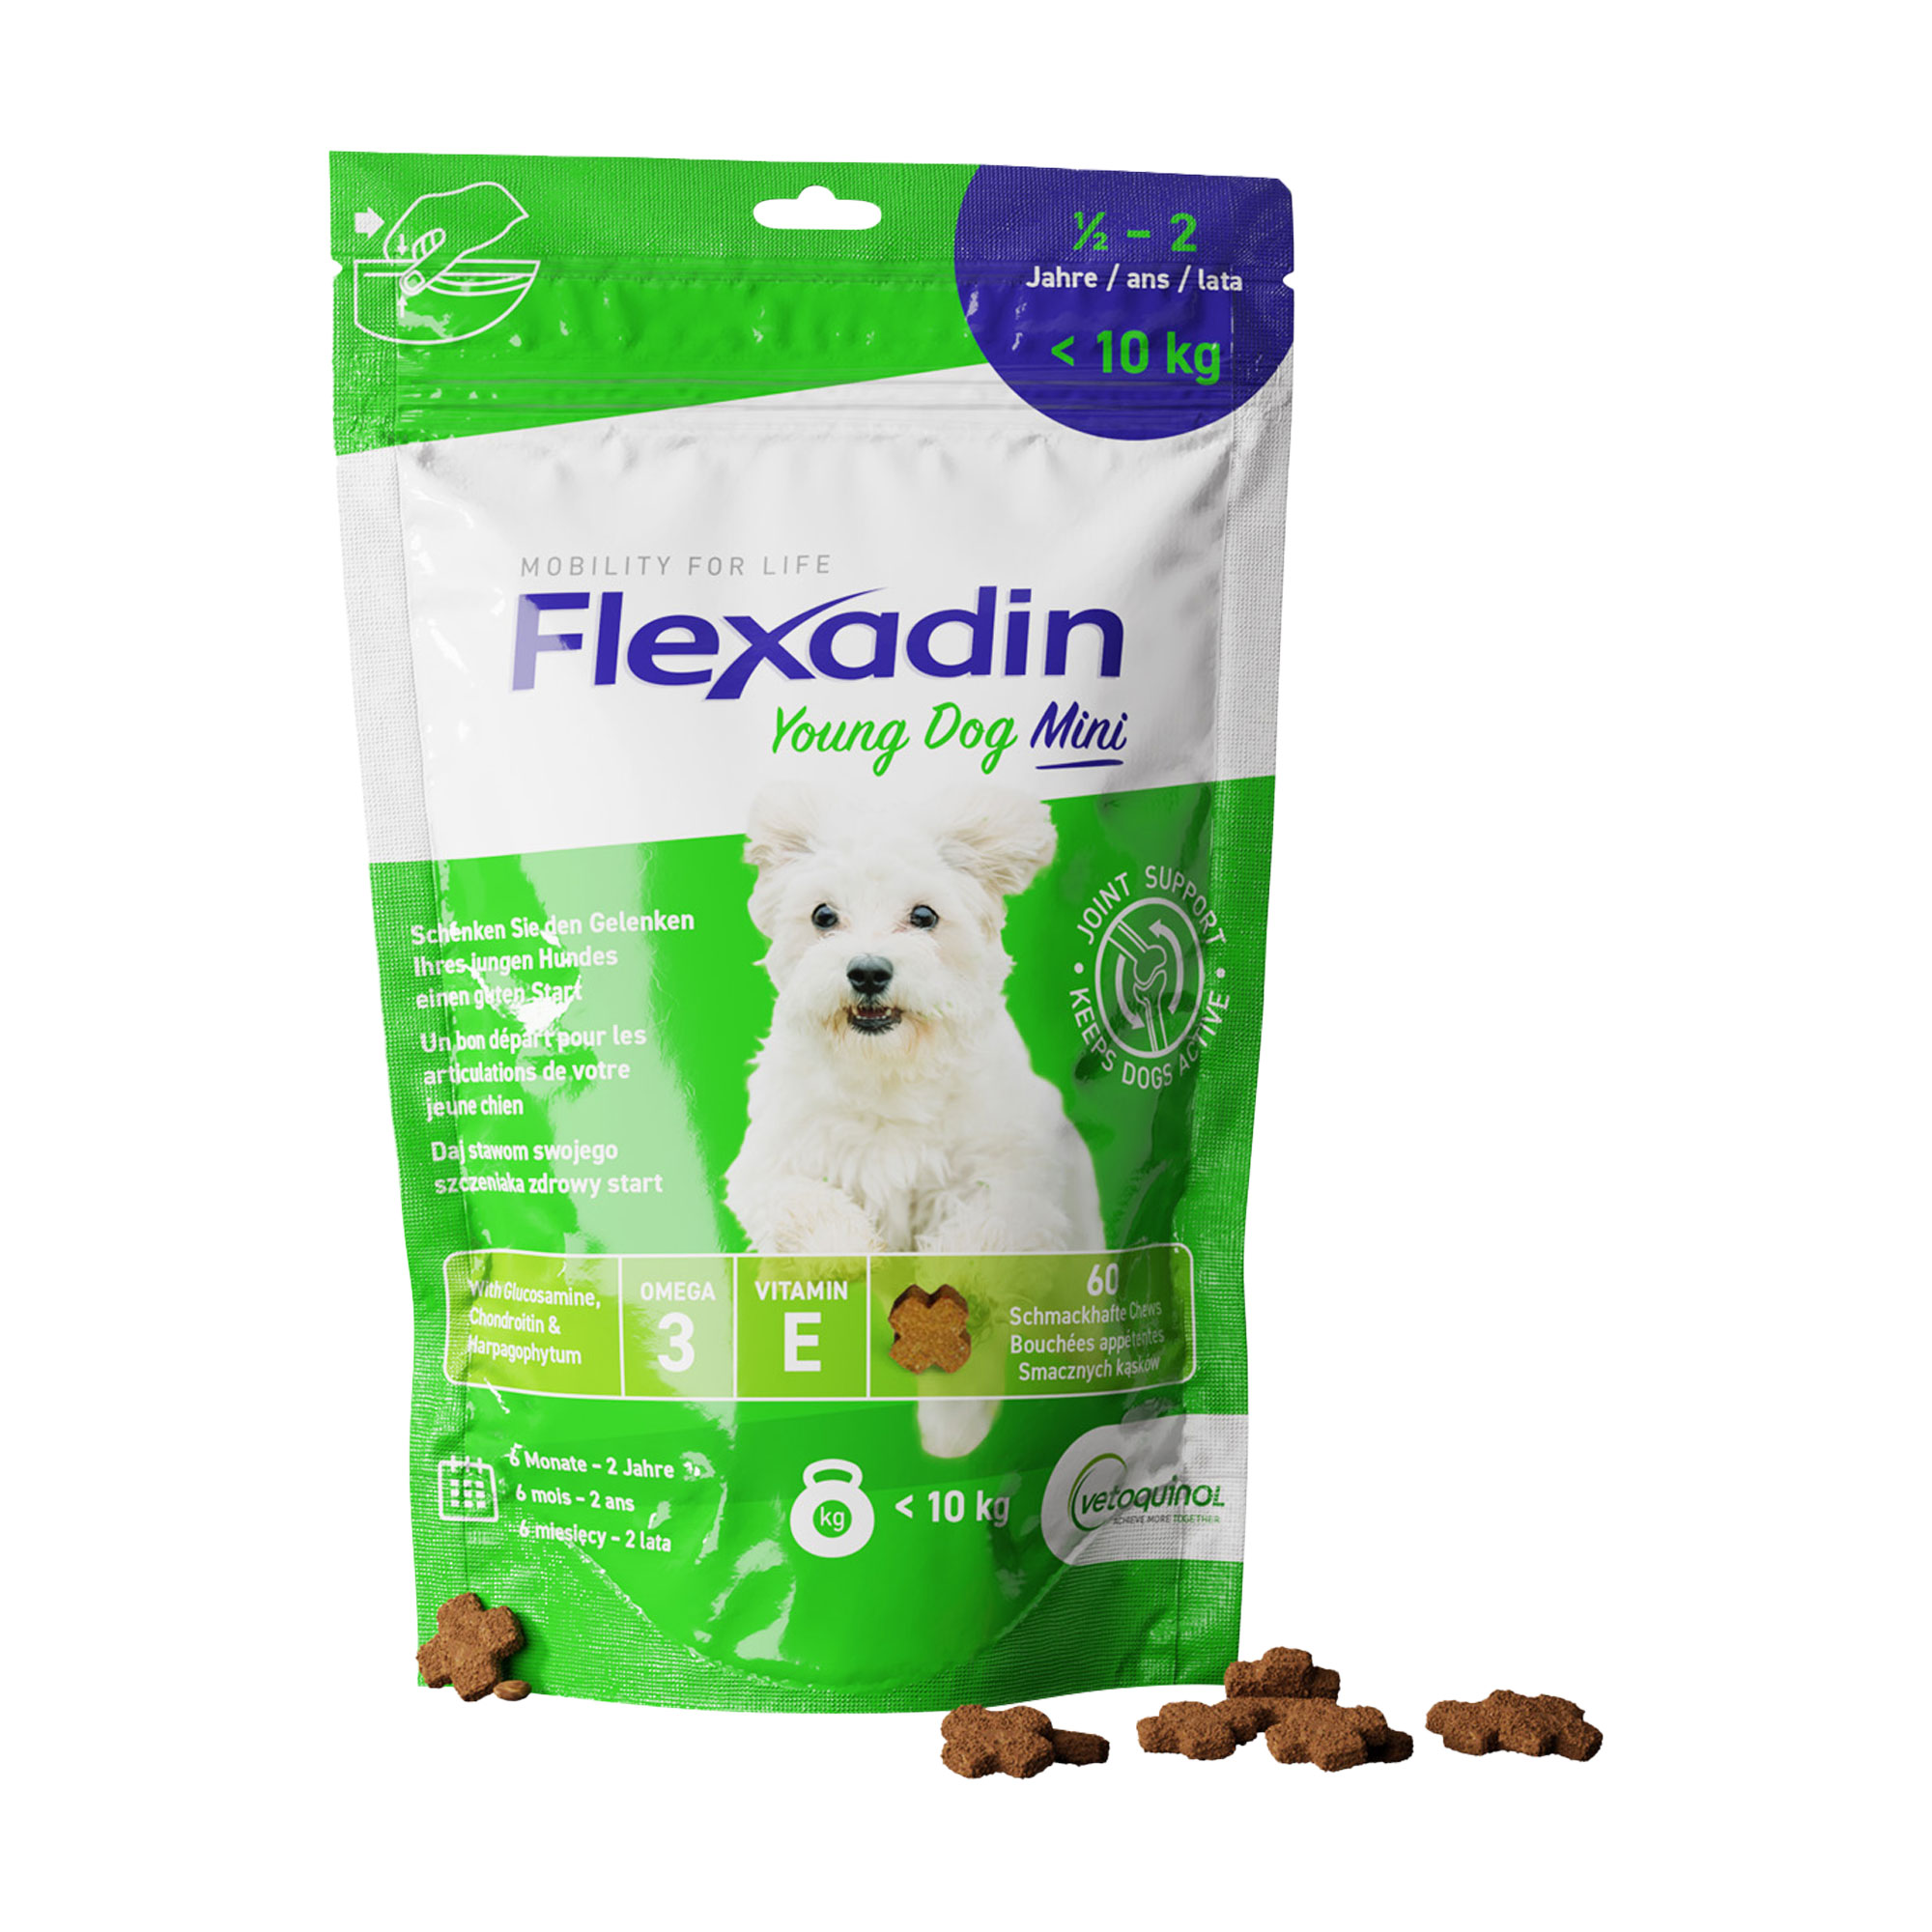 Ergänzungsfutter für junge Hunde bis 10 kg. Schmackhafte Kauleckerli (Chews) mit Glucosamin, Chondroitin und Omega-3 Fettsäuren.